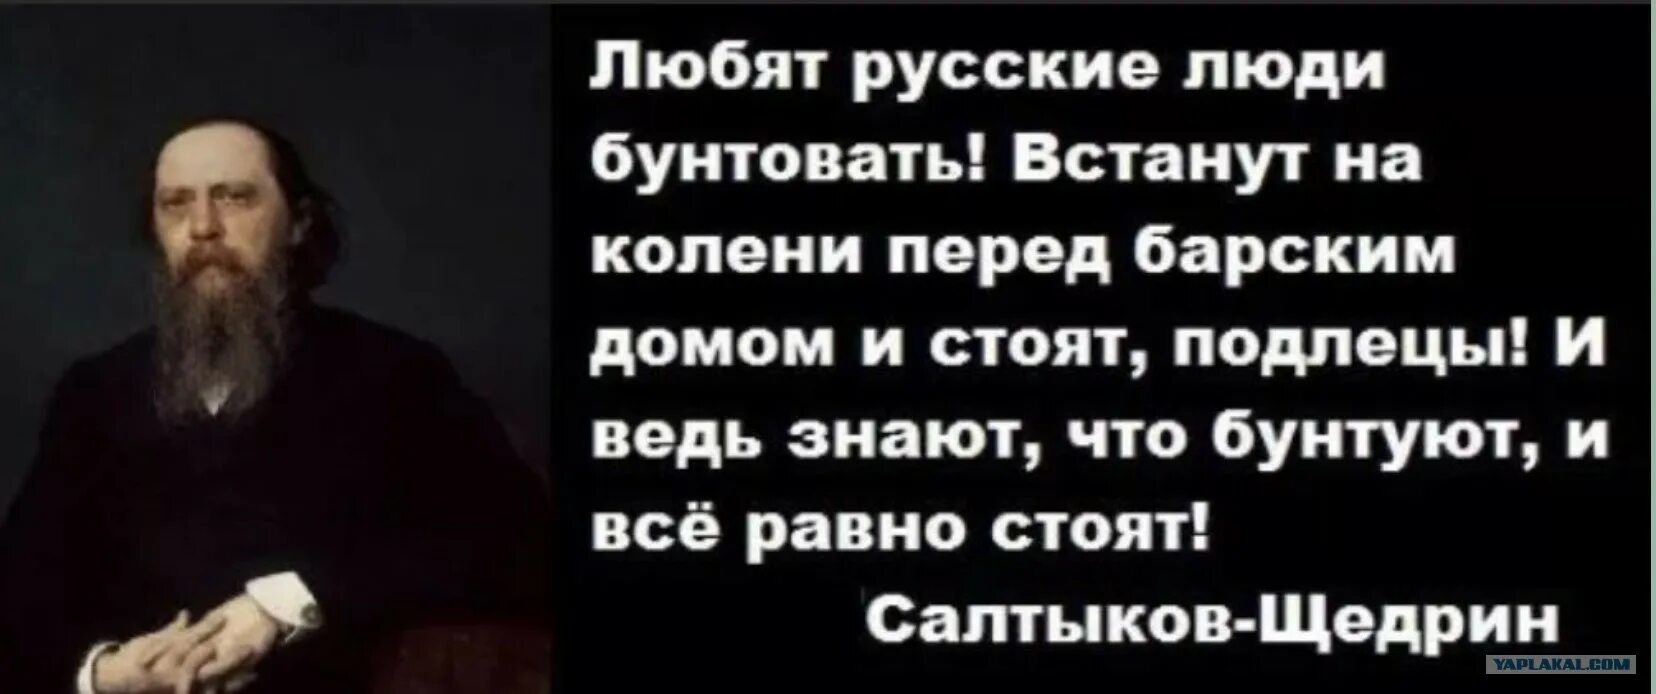 Салтыков-Щедрин любит русский народ бунтовать. Салтыков Щедрин бунтуют на коленях. Салтыков Щедрин любят русские бунтовать. Встанут на колени и бунтуют.